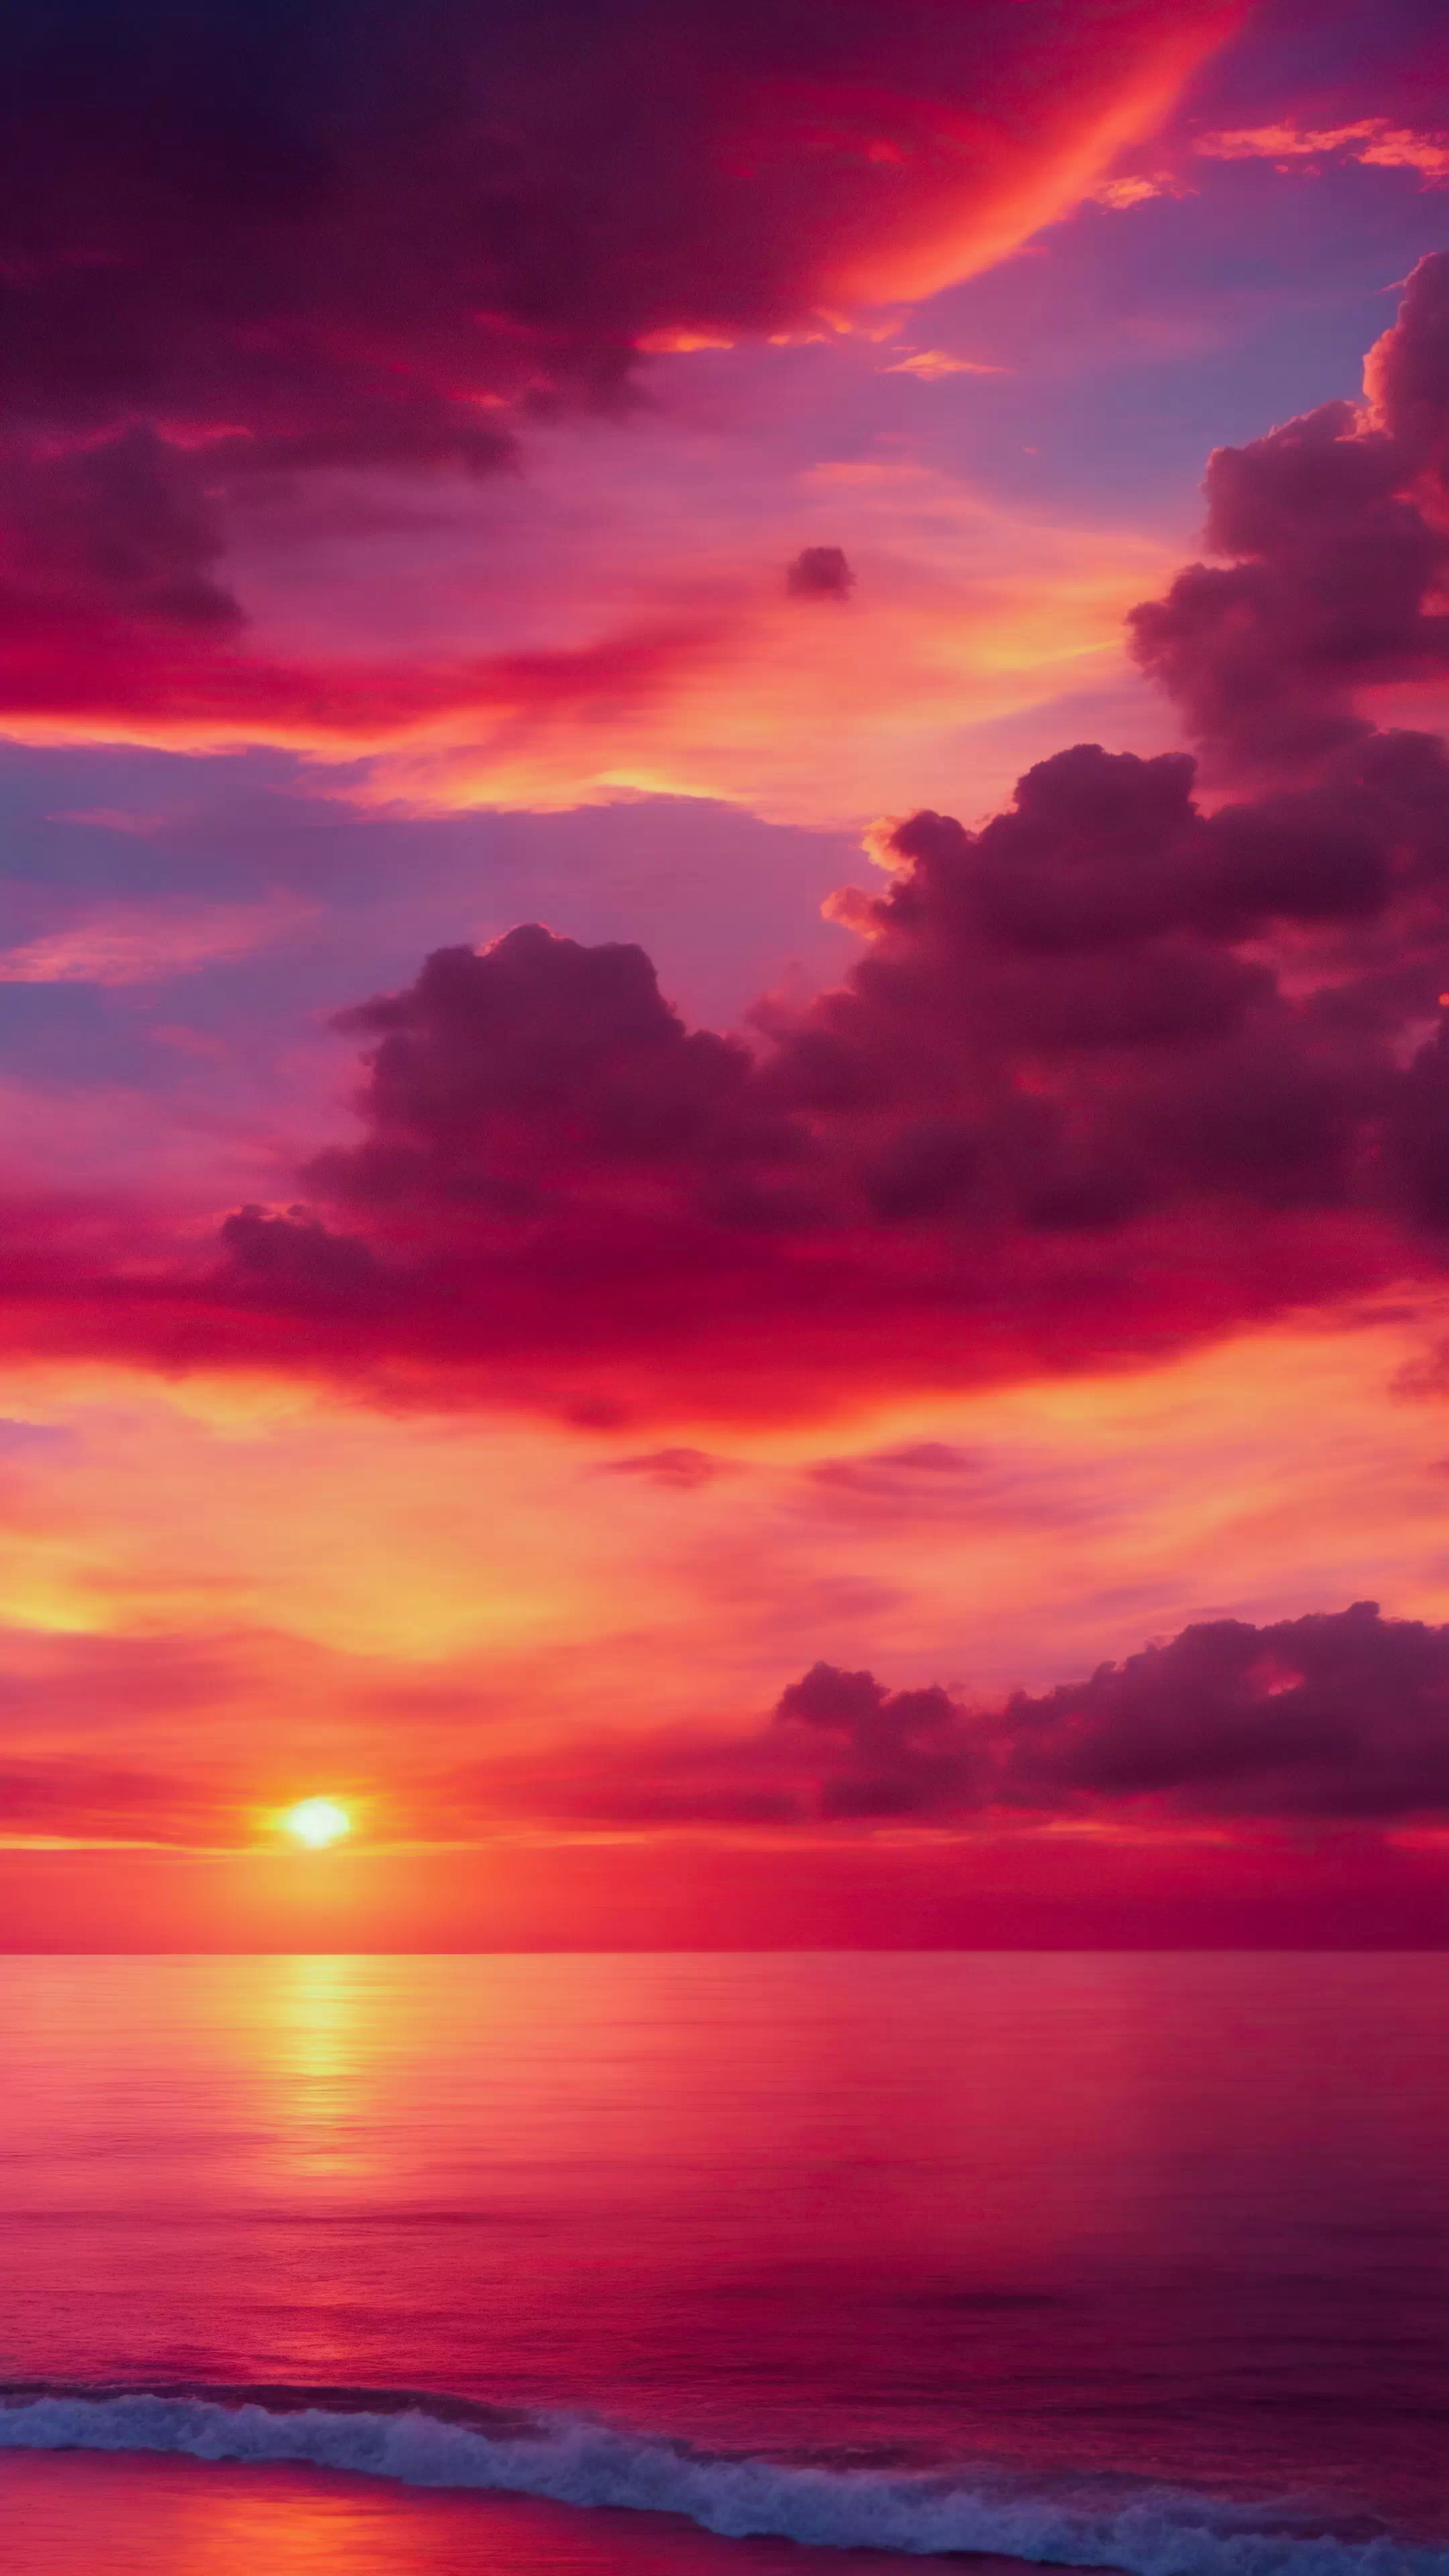 Vivez le spectacle d'un coucher de soleil avec notre fond d'écran en HD des paysages pour iPhone, mettant en scène des teintes ardentes d'orange et de rose, et laissez votre écran devenir une toile pour les couleurs les plus vibrantes de la nature.